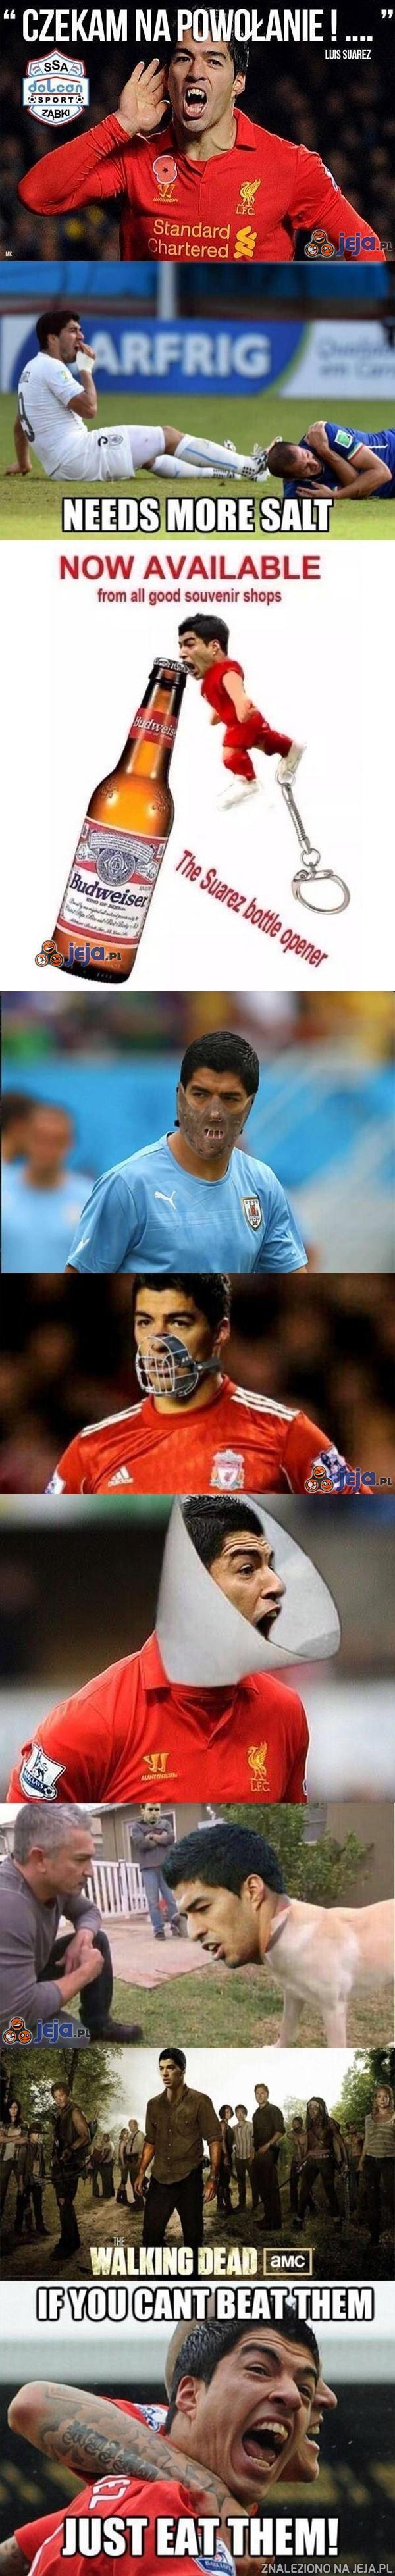 Reakcja internautów na zachowanie Suareza